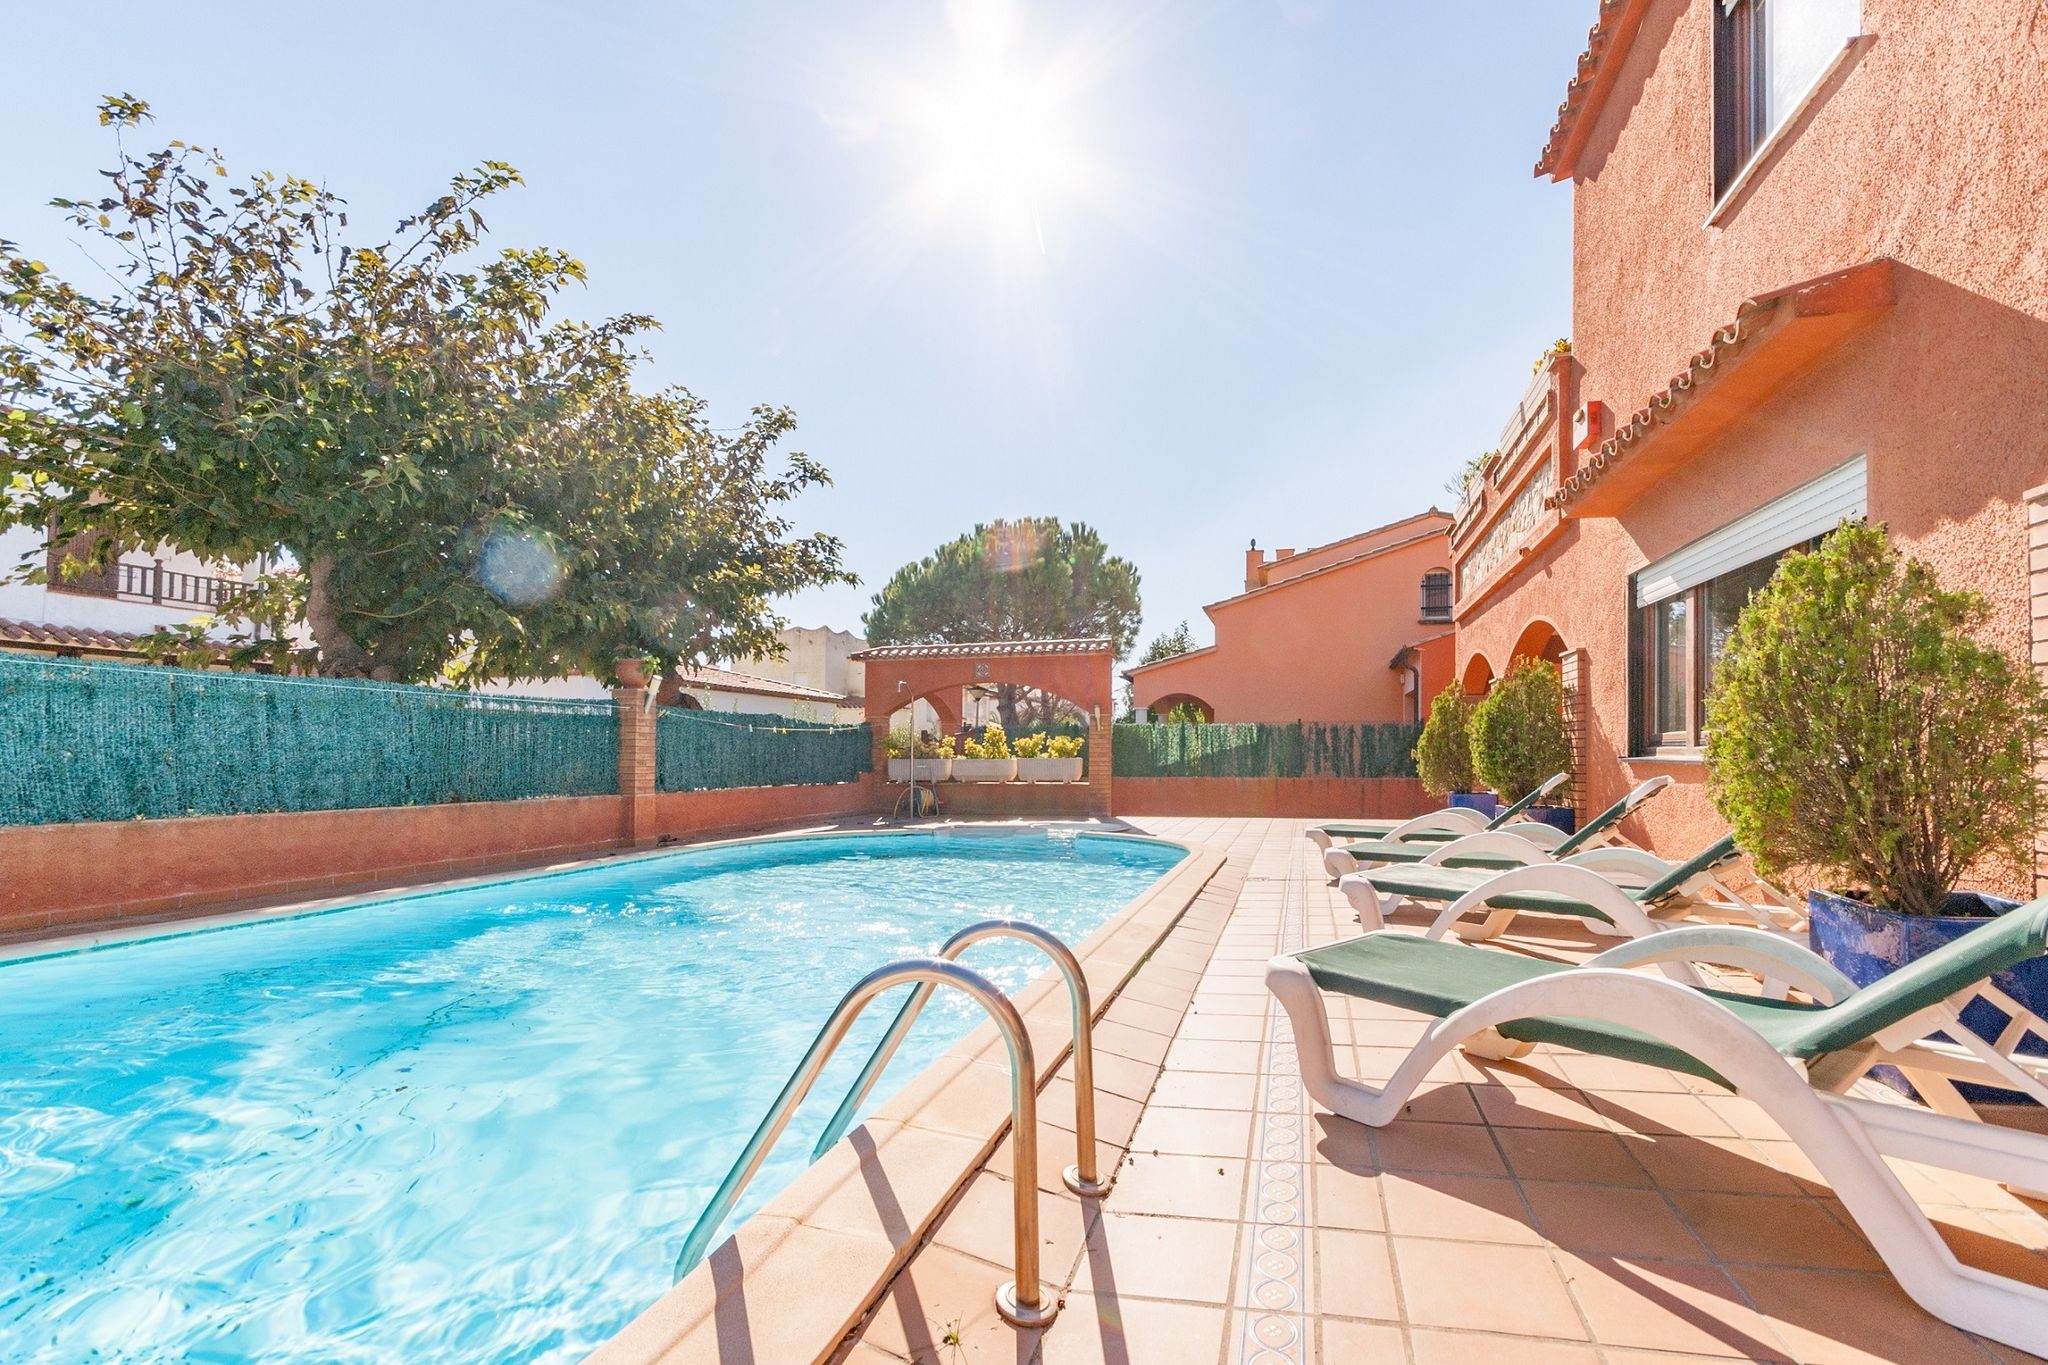 Maison de vacances confortable à Gérone avec piscine